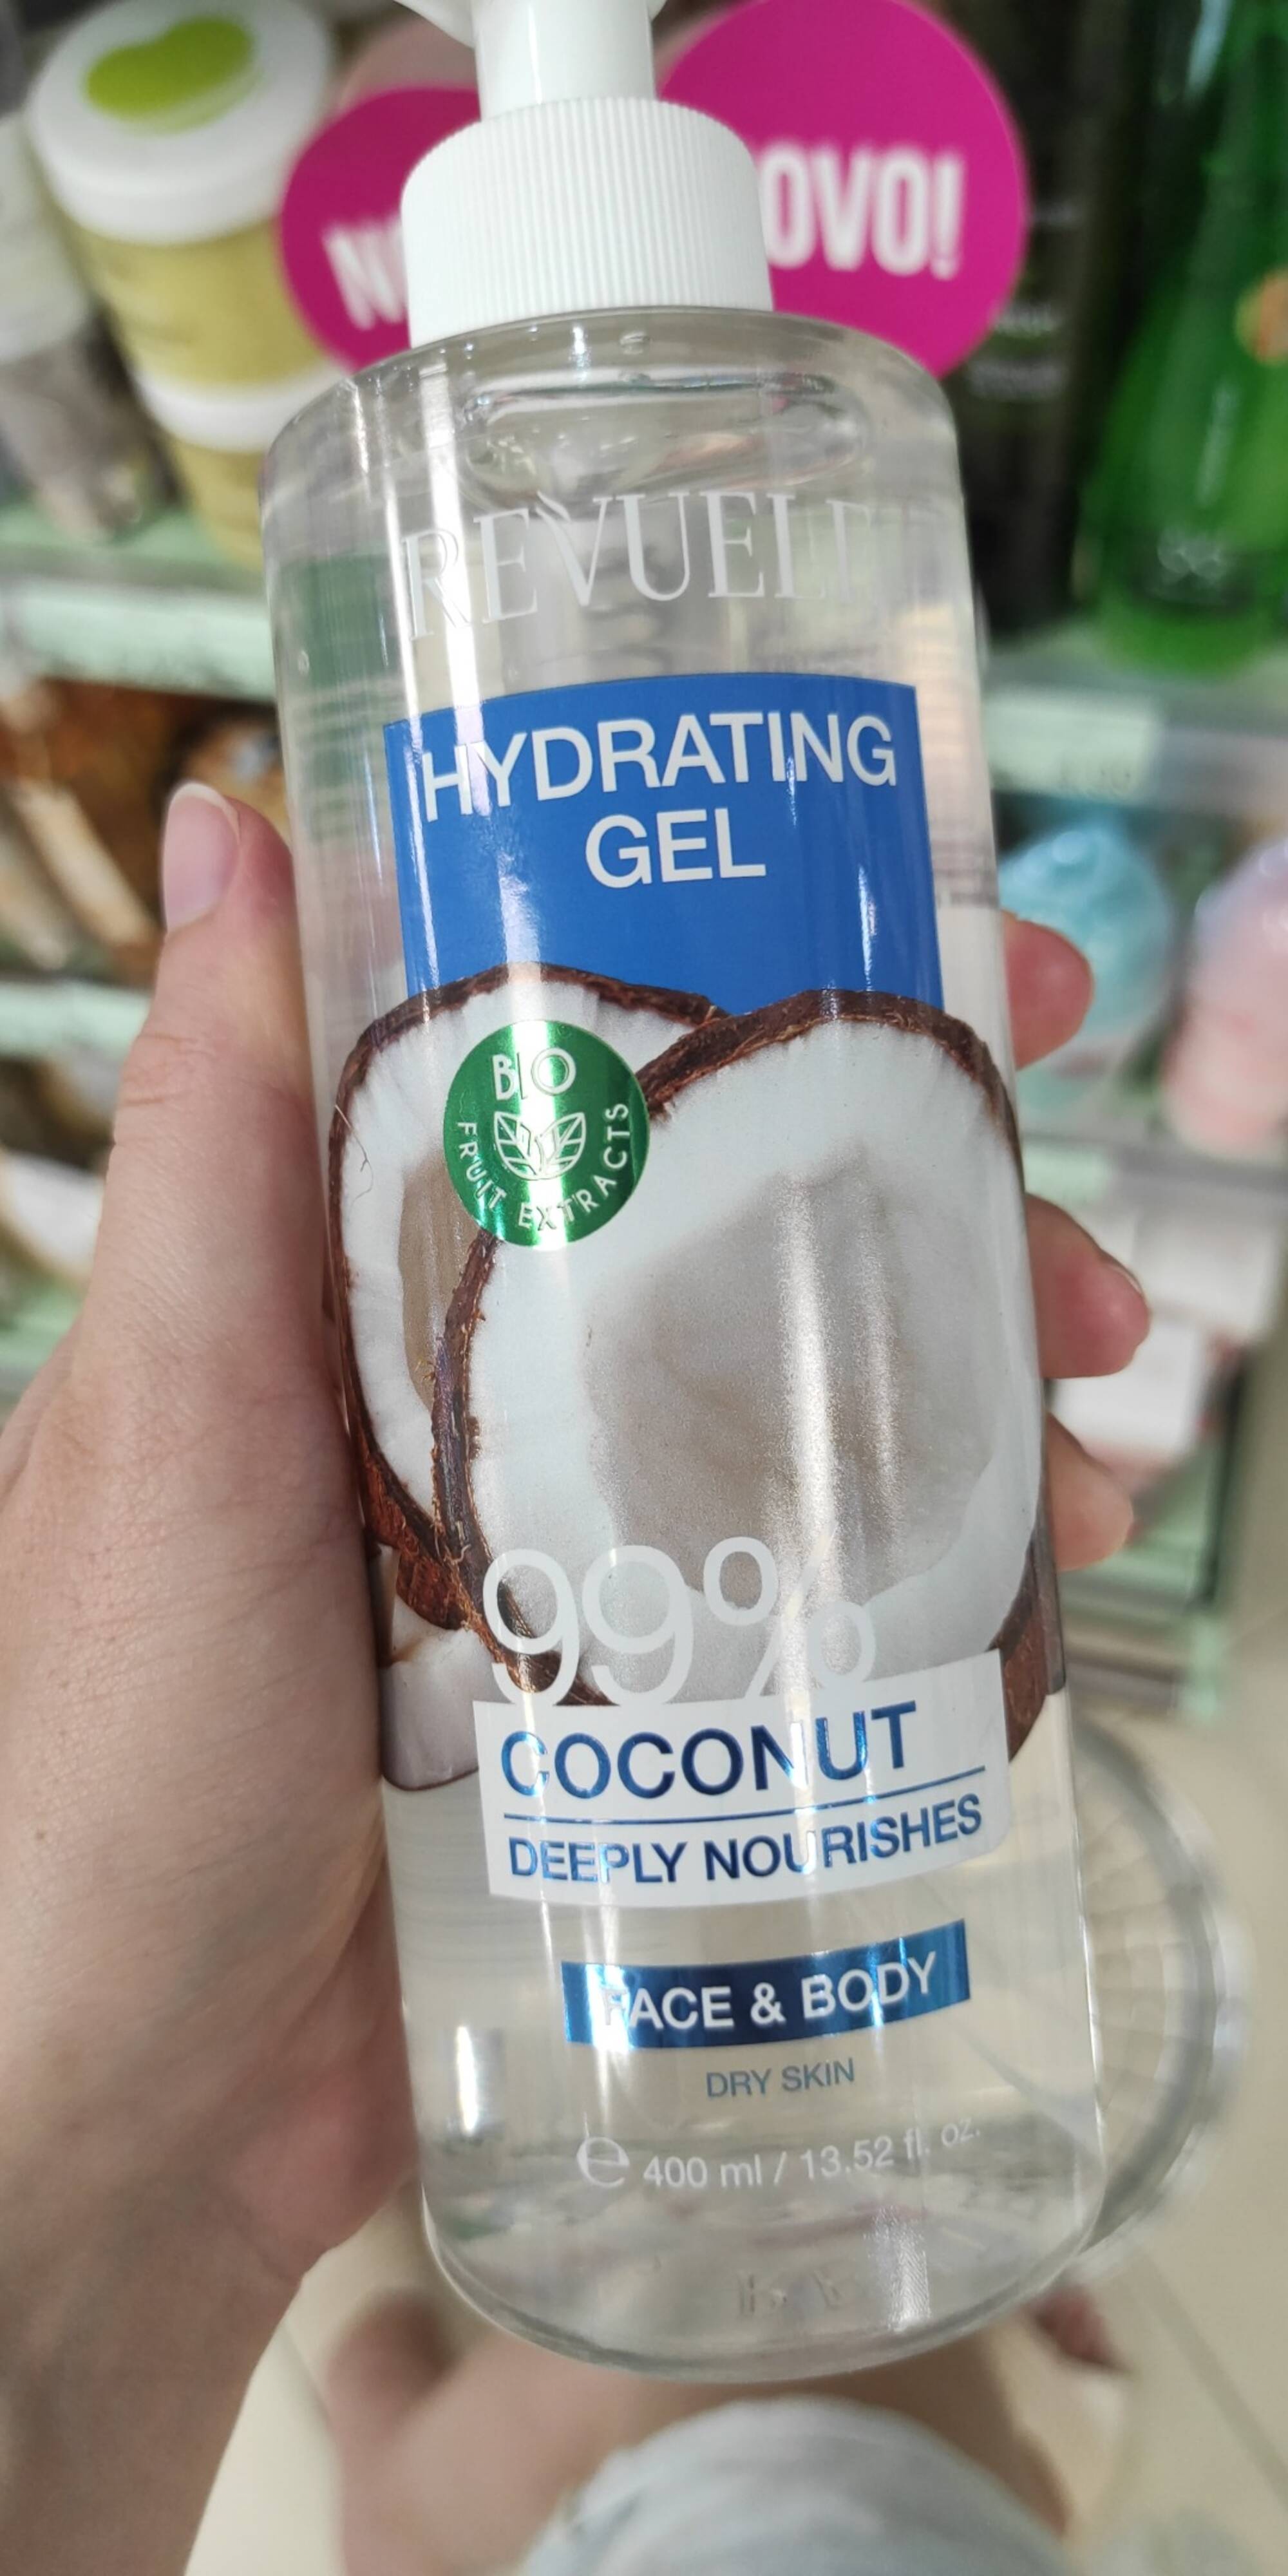 REVUELE - Coconut bio - Hydrating gel face & body